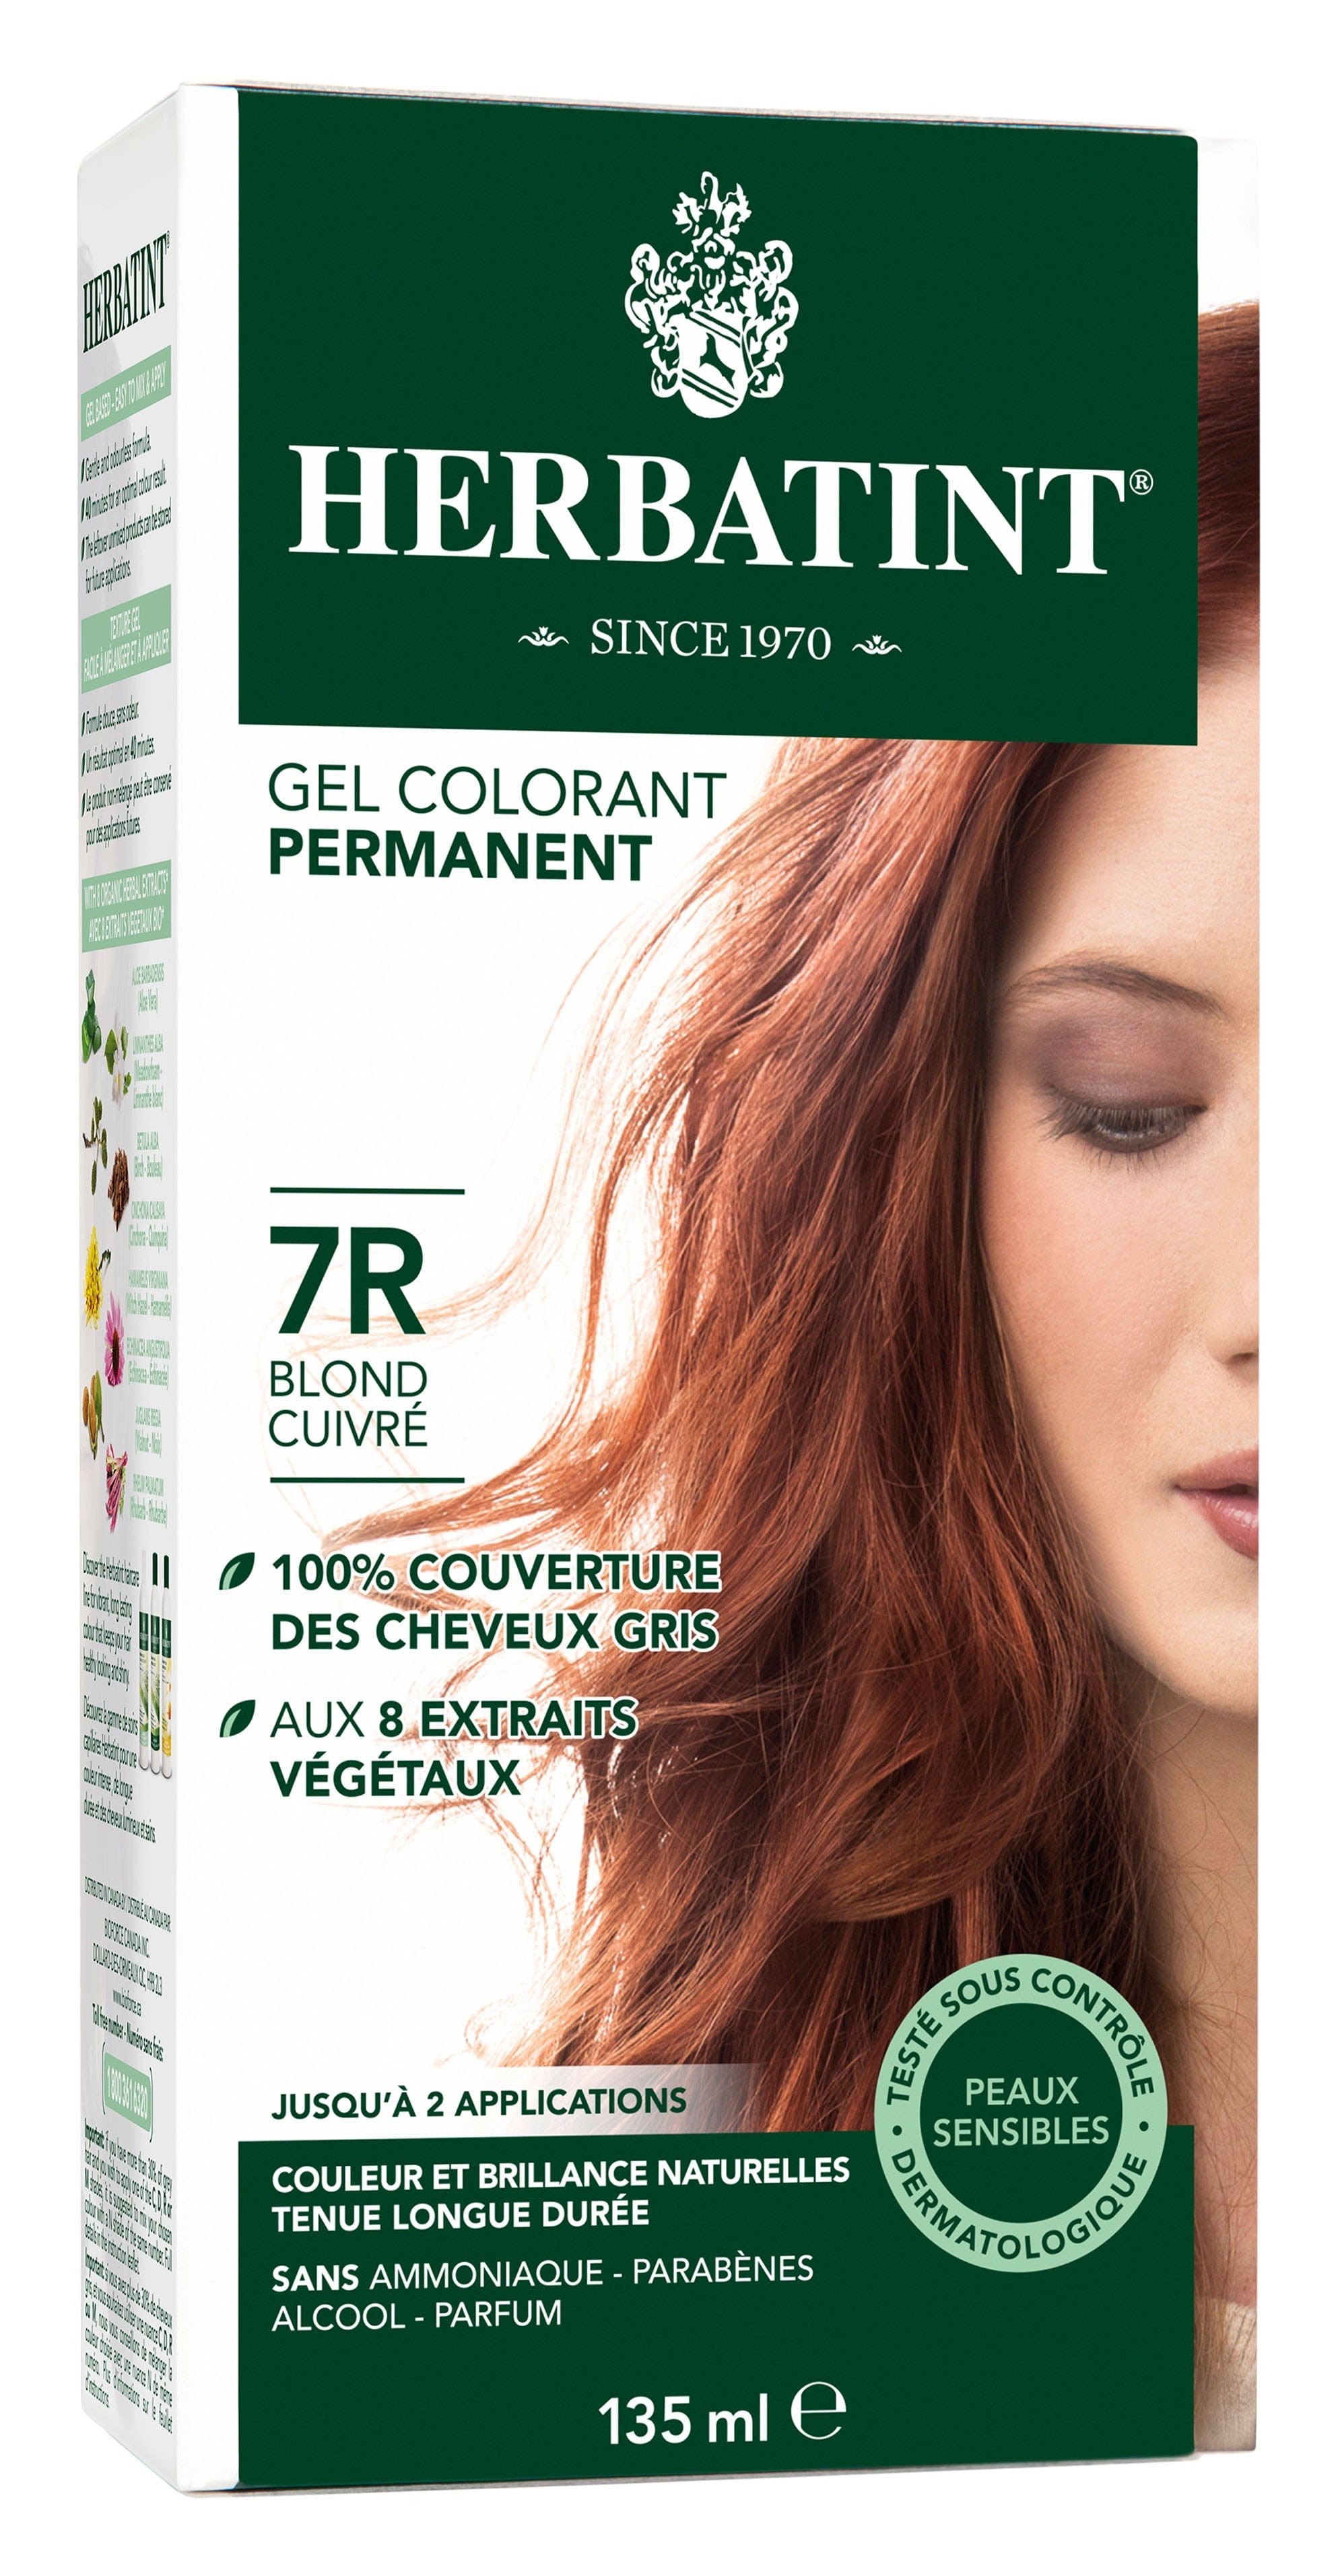 HERBATINT Soins & beauté Teinture 7R Blond cuivré 135ml